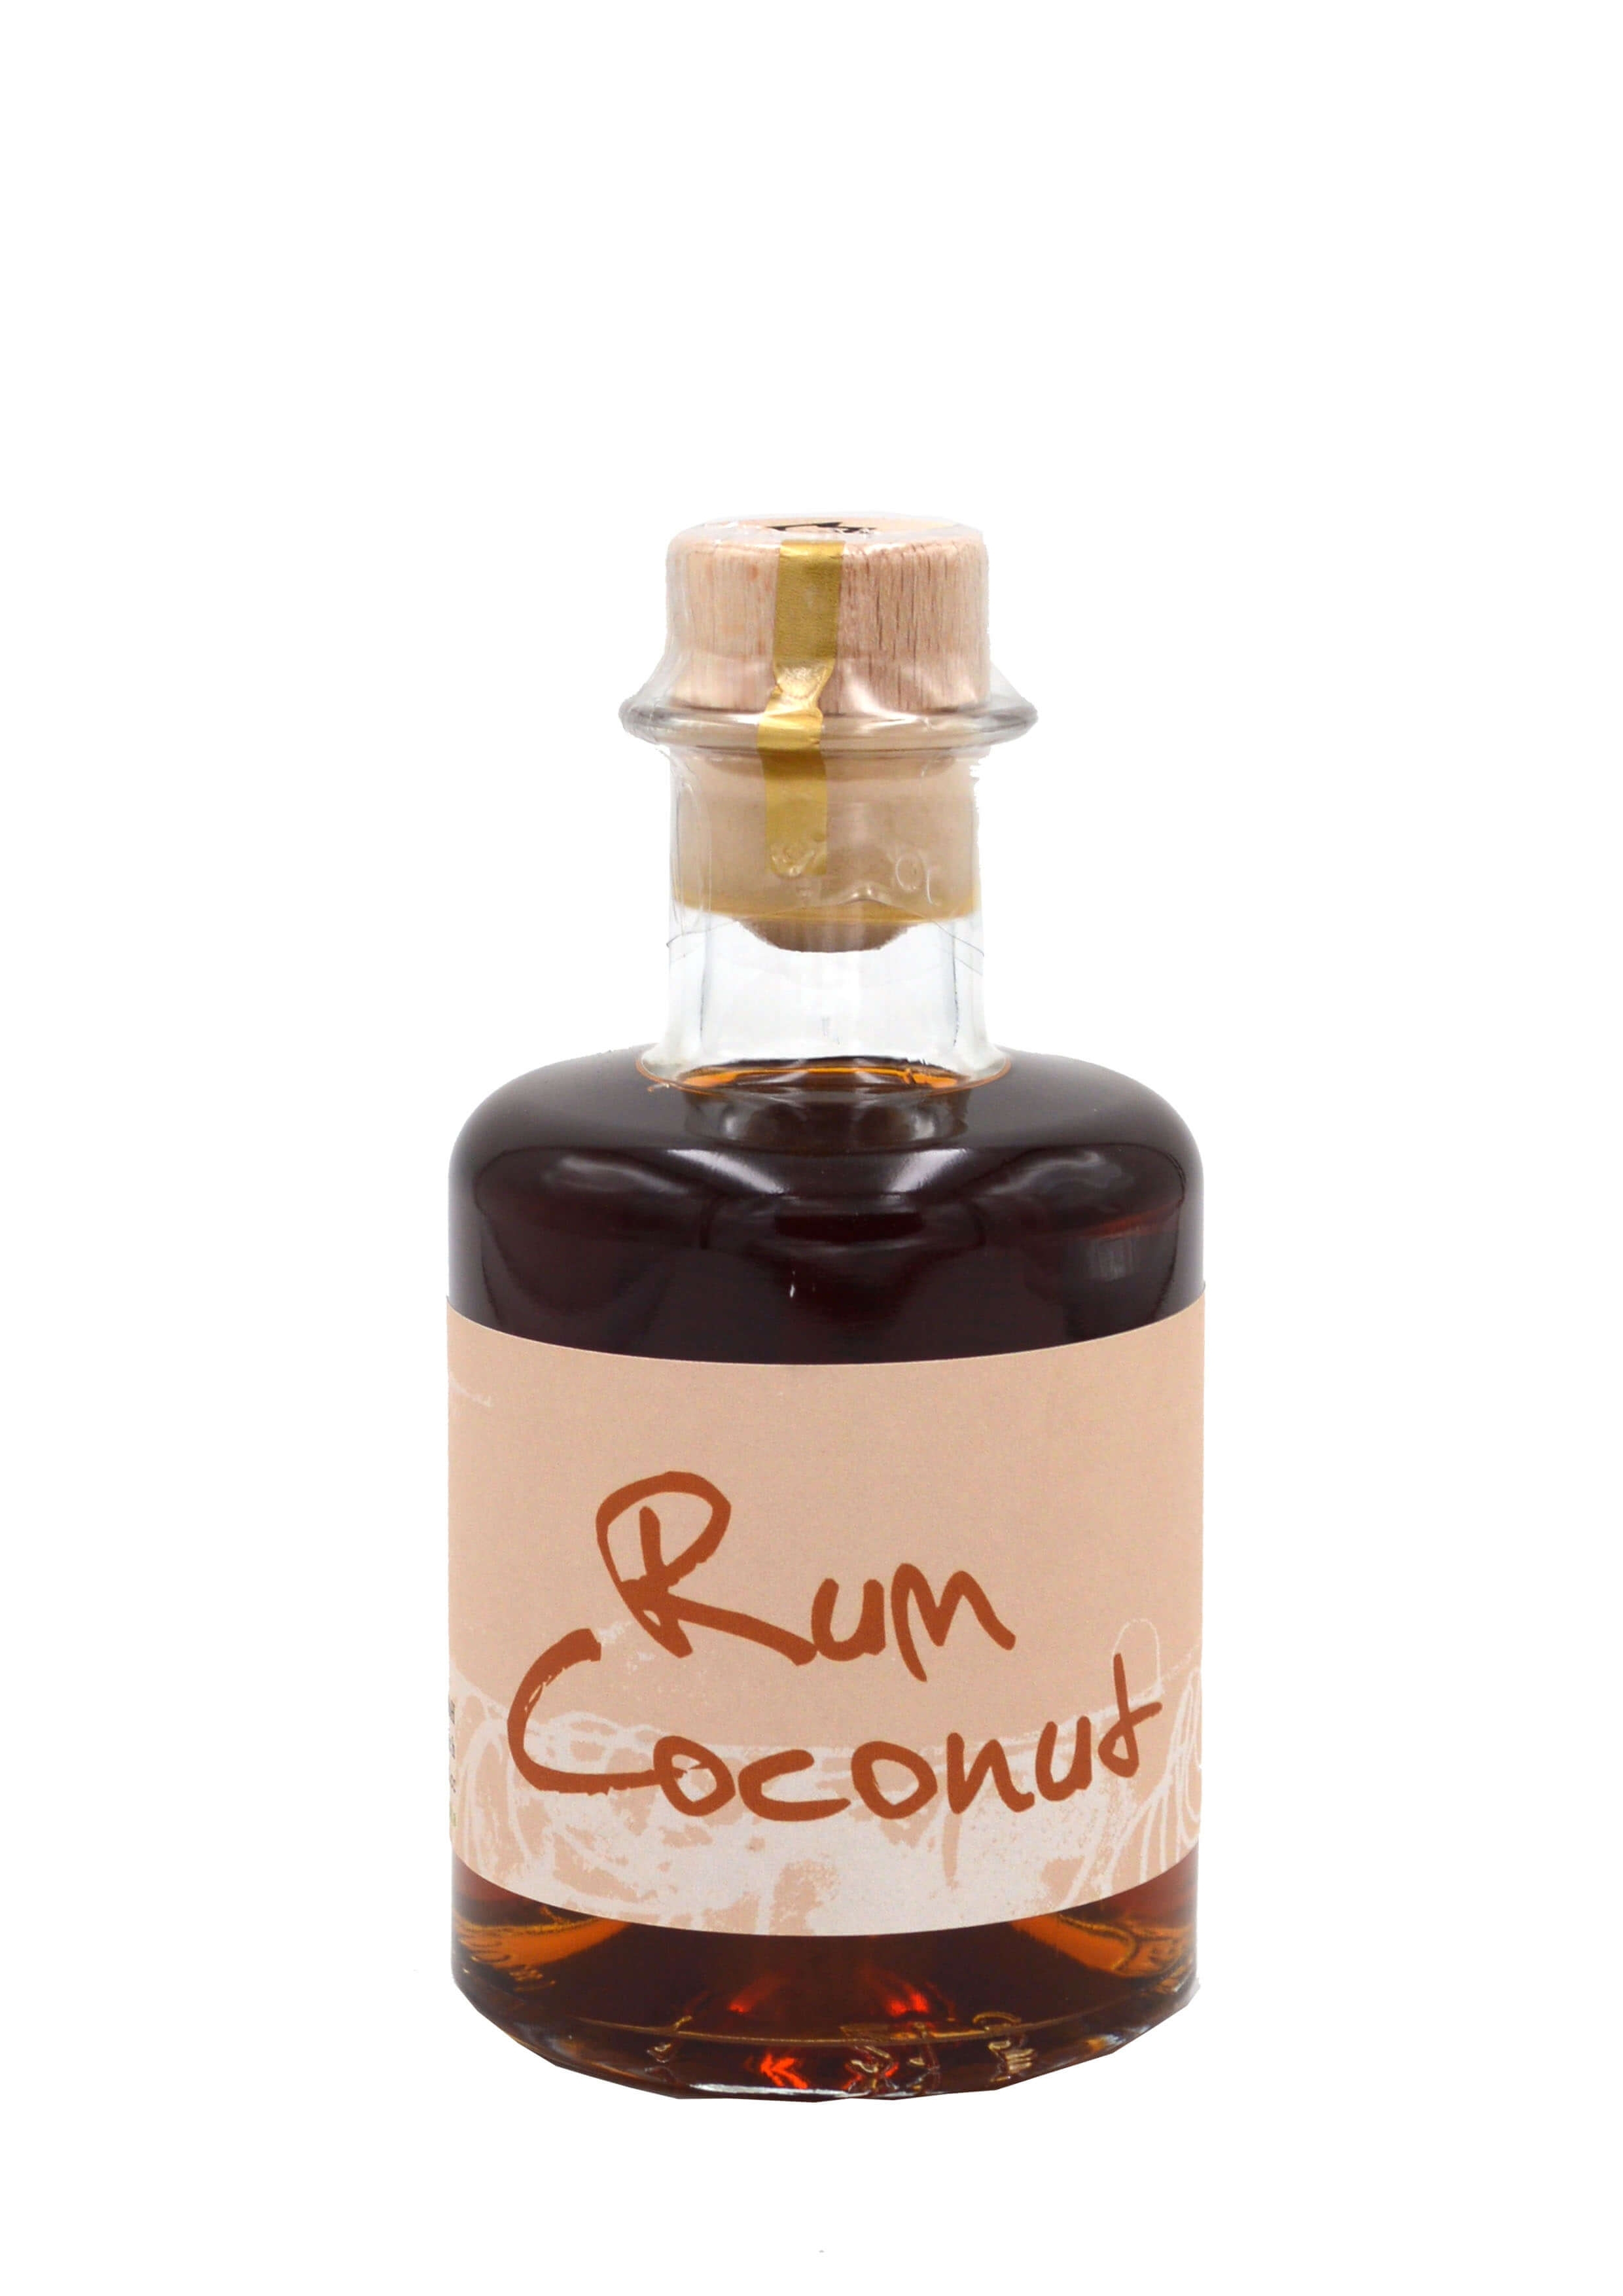 Prinz Rum Coconut Likör 0,2l | worldwidespirits